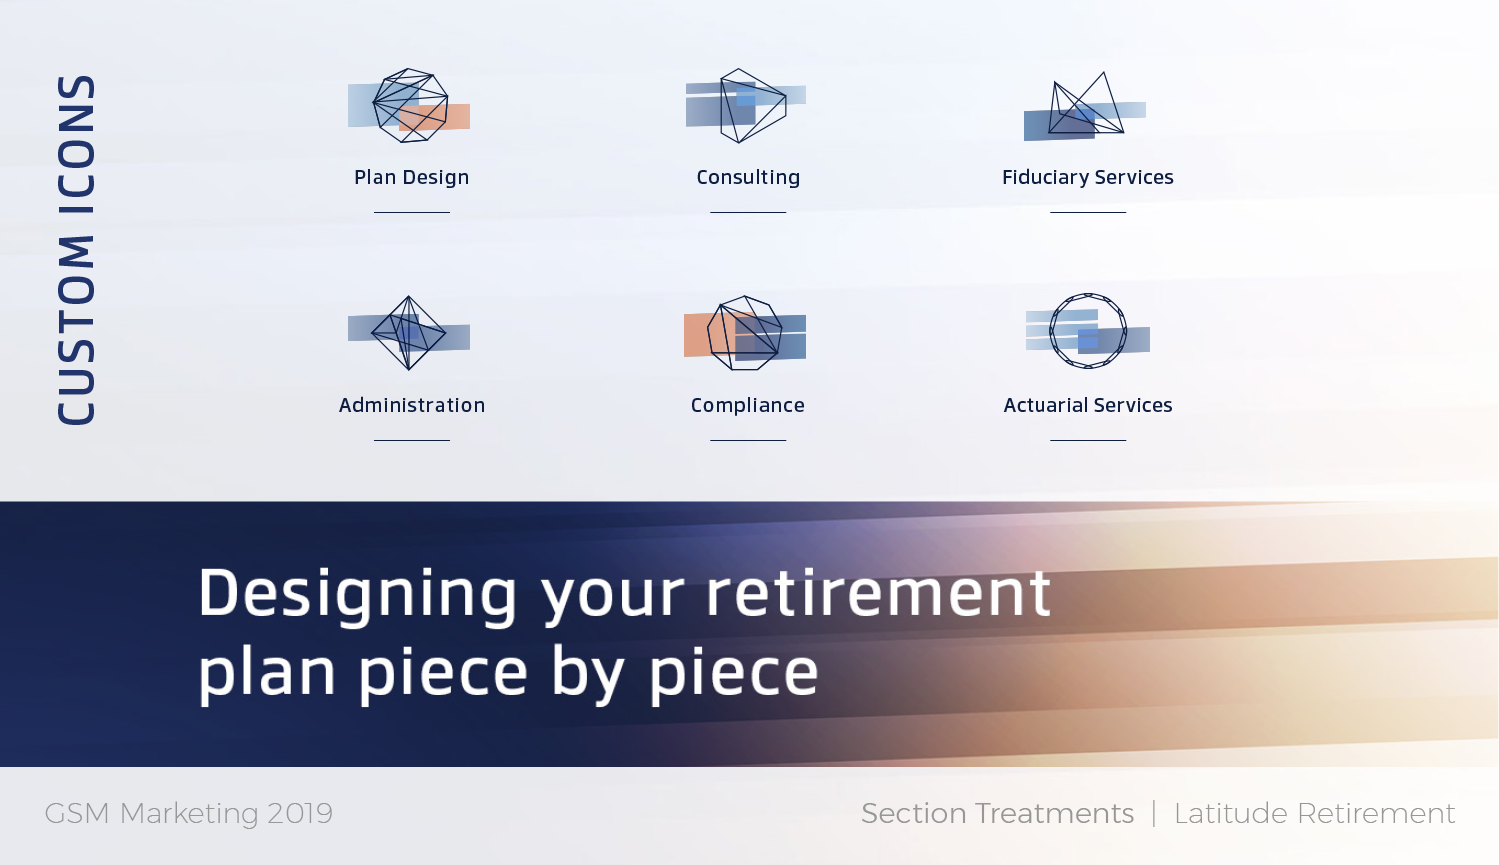 Latitude Retirement custom icon design